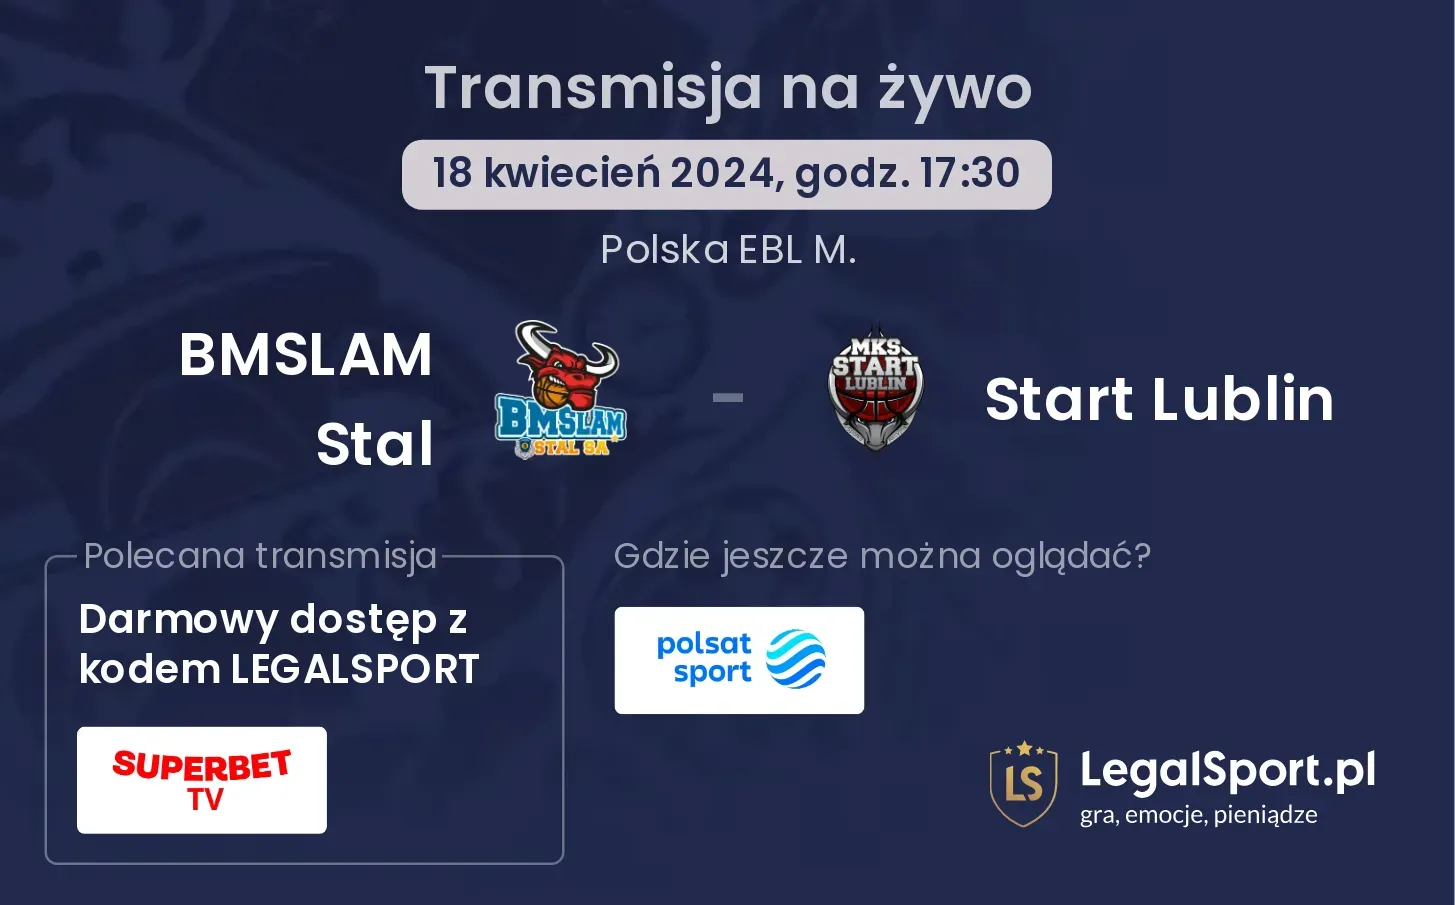 BMSLAM Stal - Start Lublin transmisja na żywo